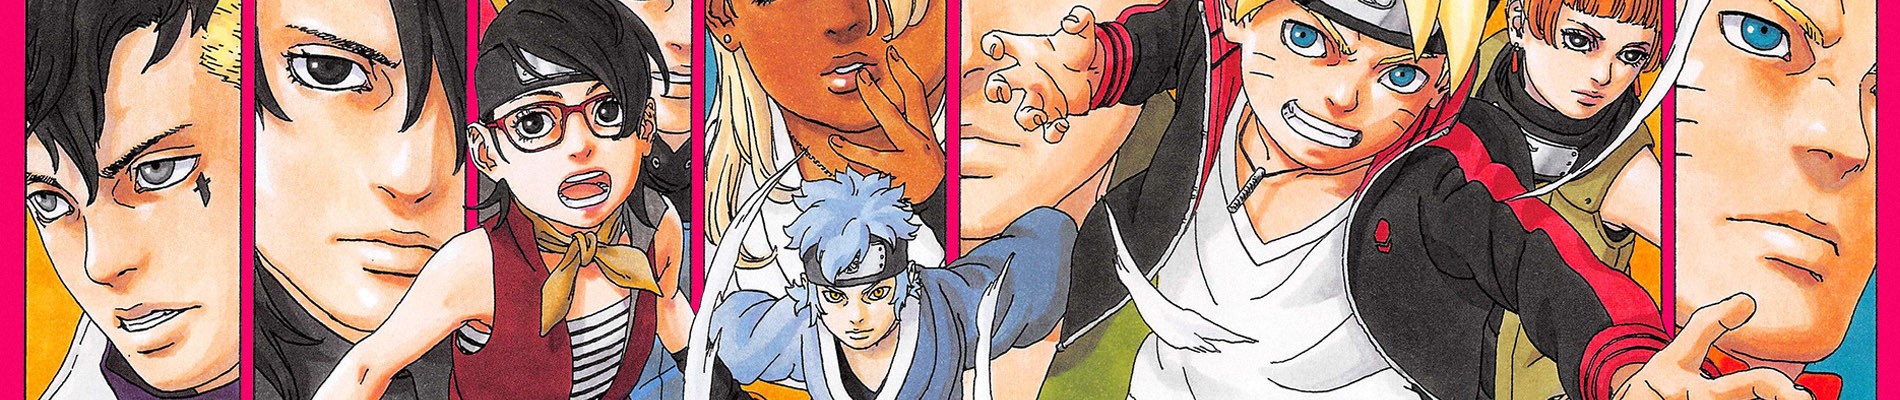 Boruto and Shinki, Narutopedia